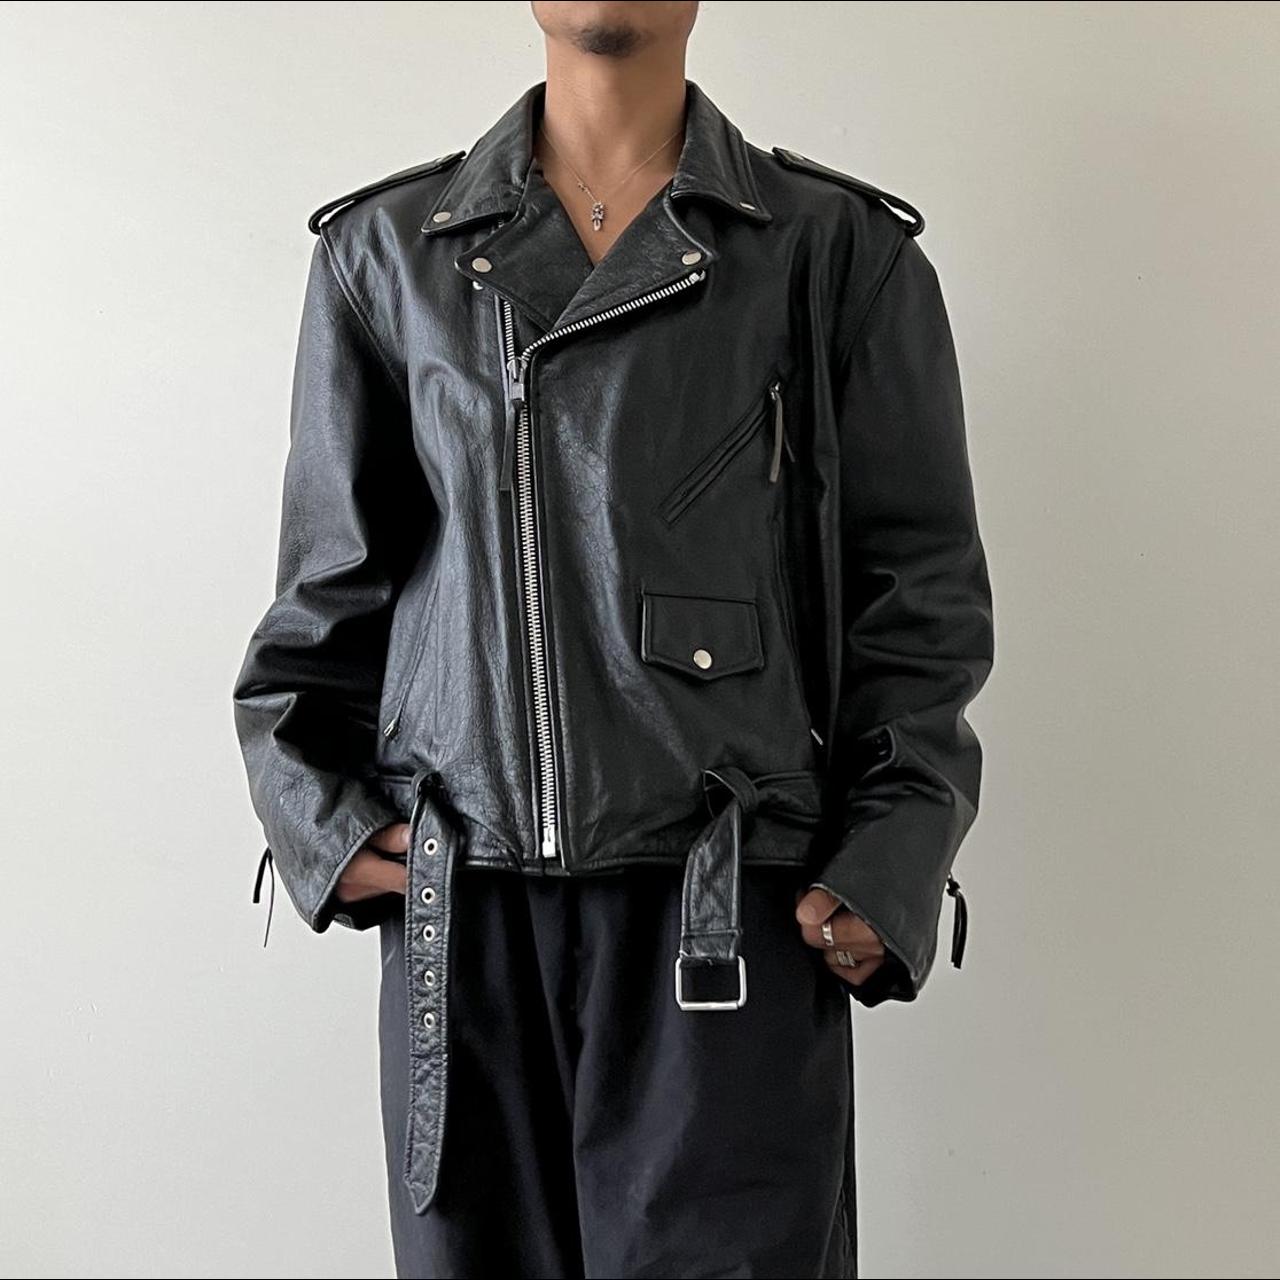 Vintage Leather Biker Jacket Measurements Length:... - Depop